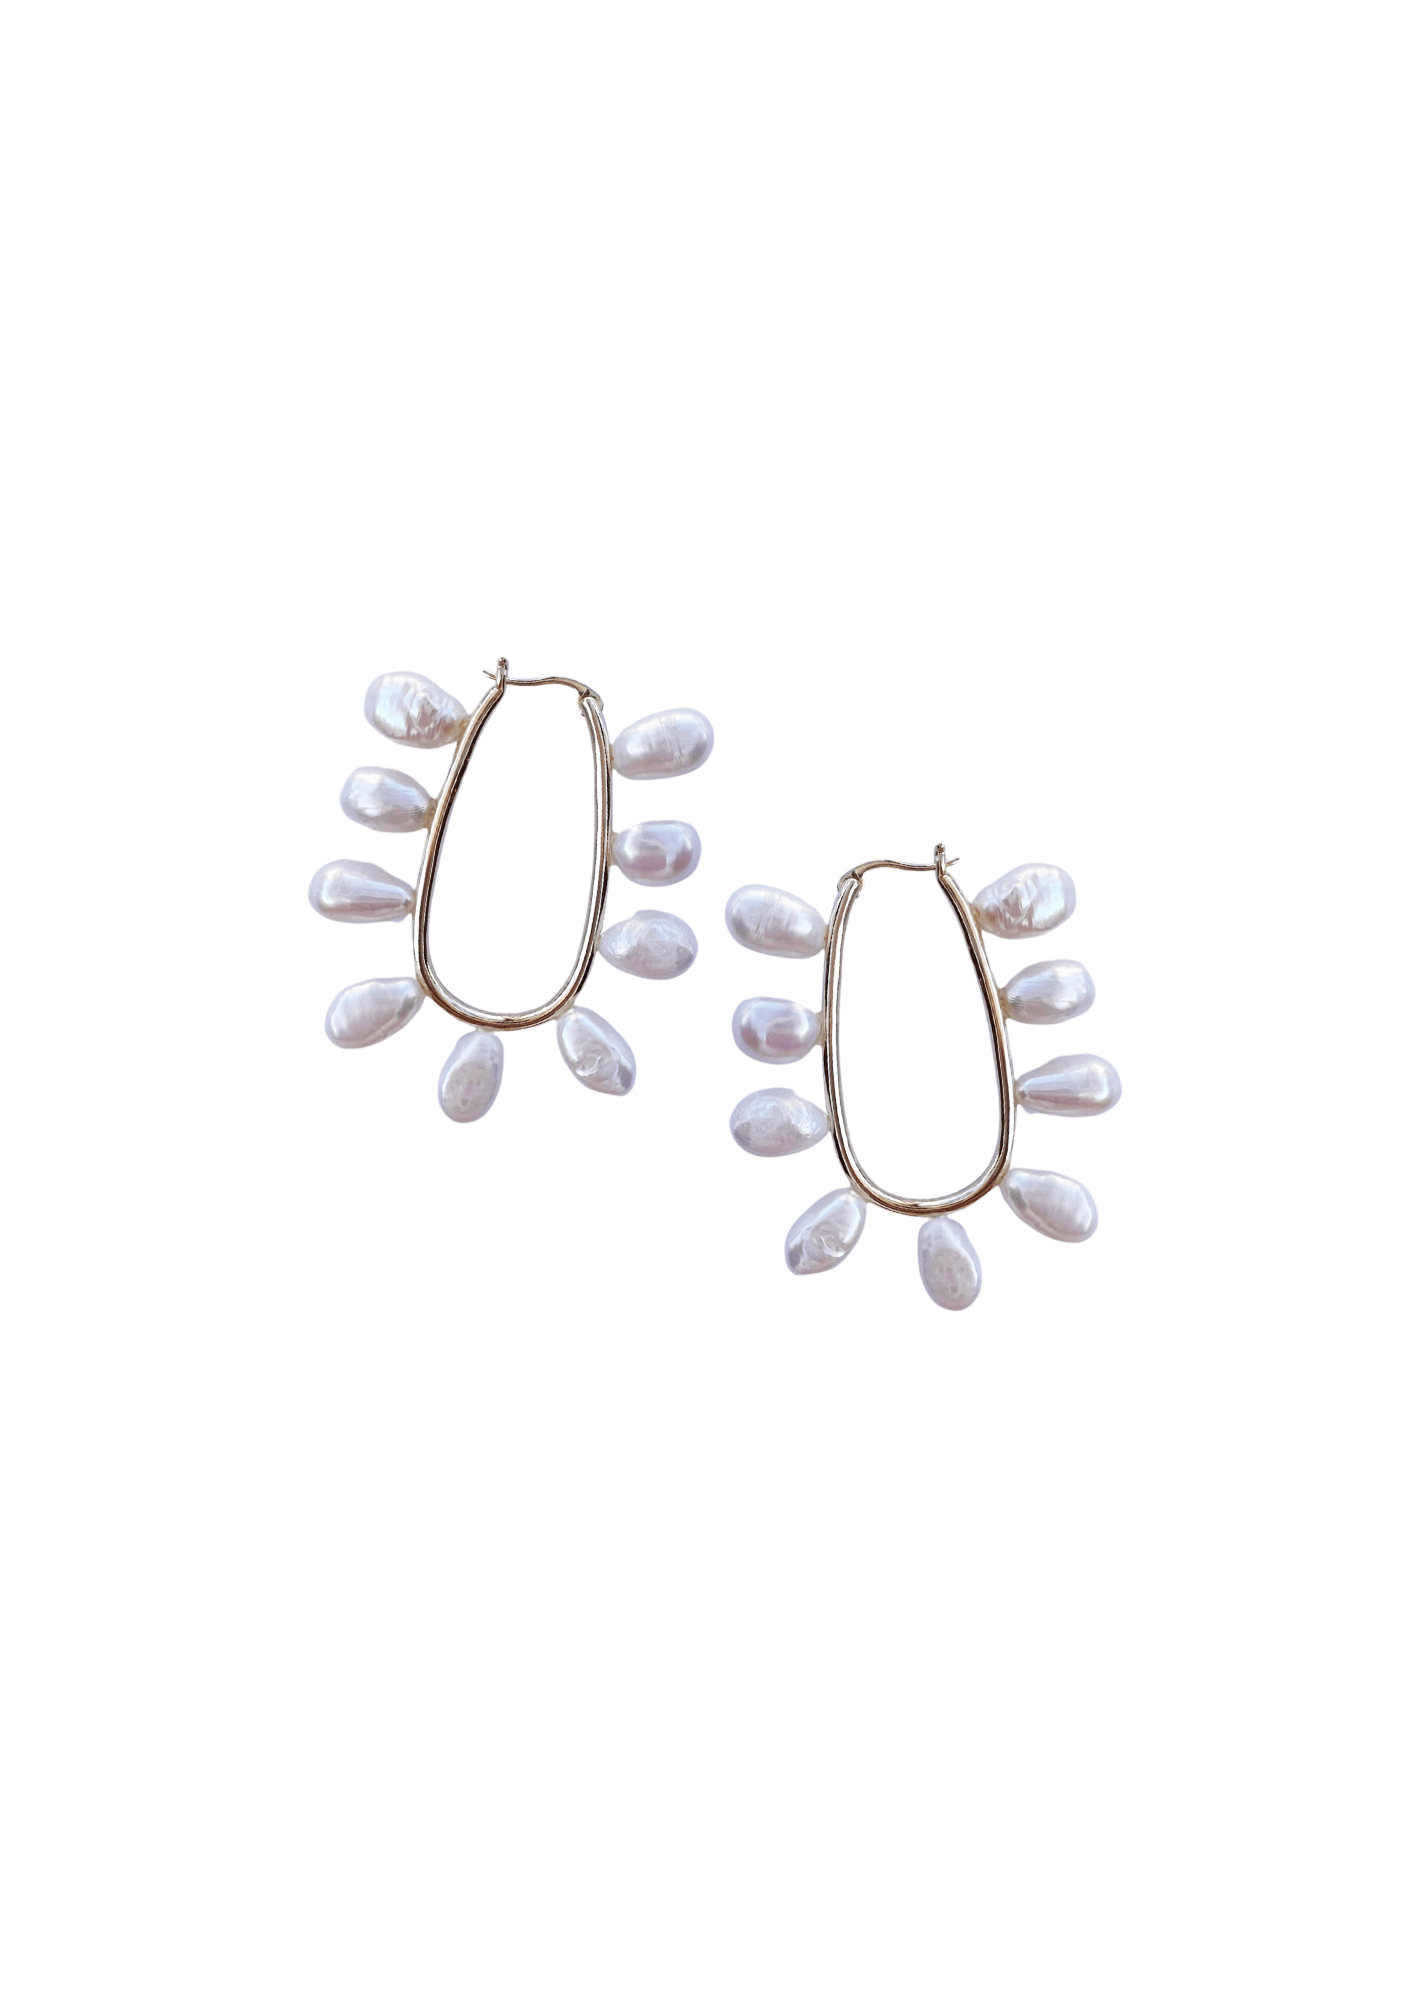 Nicola Bathie Jewelry Earrings Pre-Order Petite Freshwater Pearl Loop